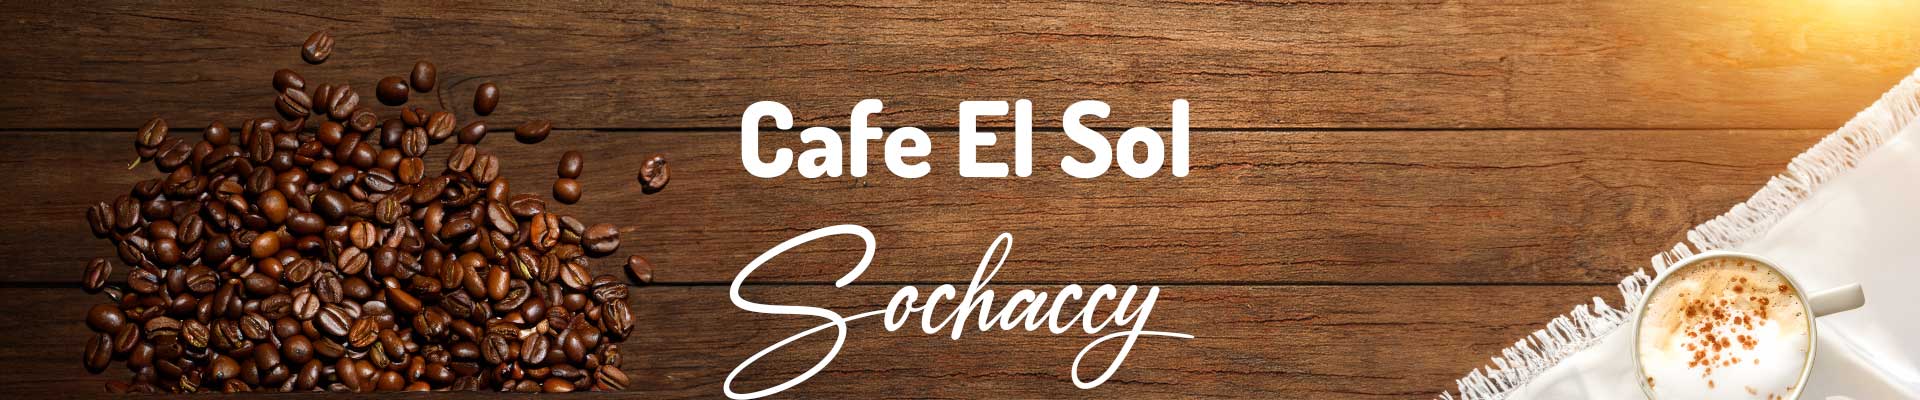 Kawy Sochaccy Cafe El Sol